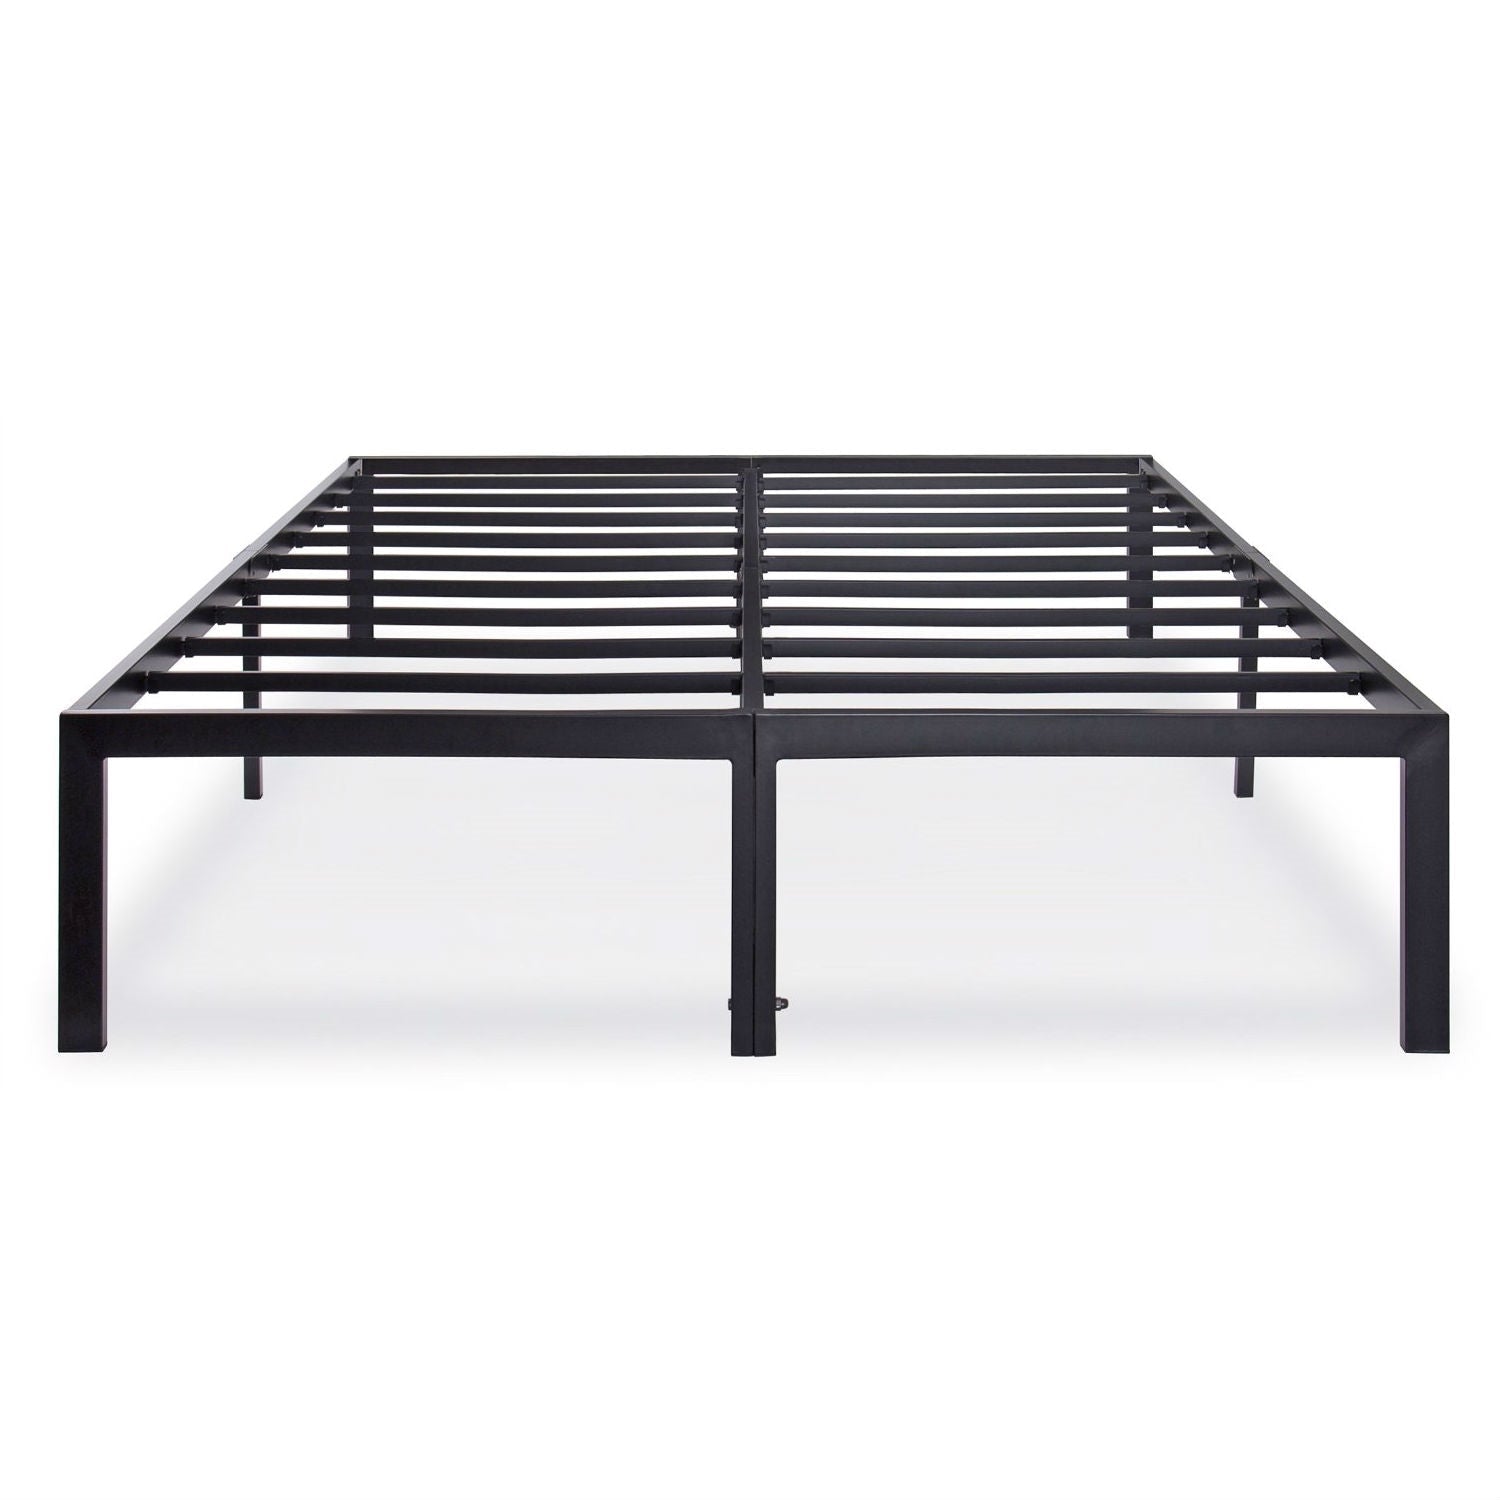 Bedroom > Bed Frames > Metal Beds - King Size Sturdy Metal Platform Bed Frame - Holds Up To 2,200 Lbs